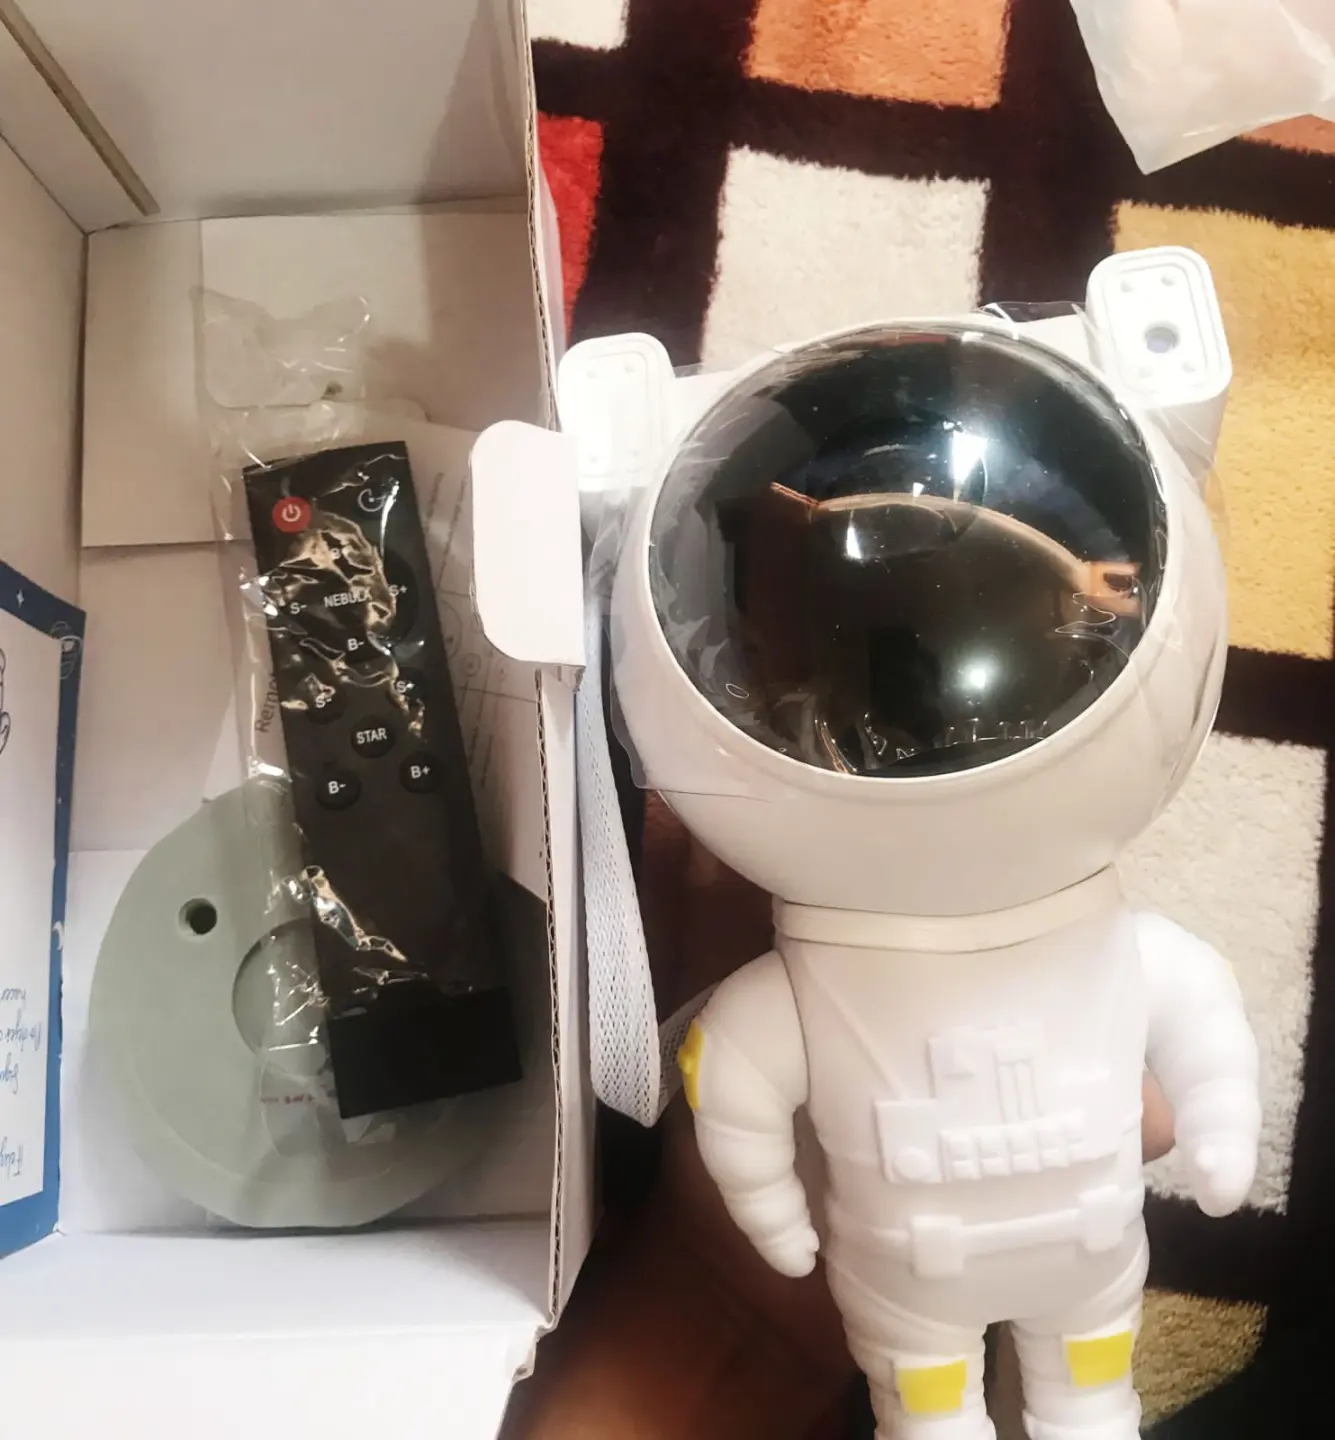 Astronauta Proyector de Galaxias + Envío Gratis – MoonBubbly